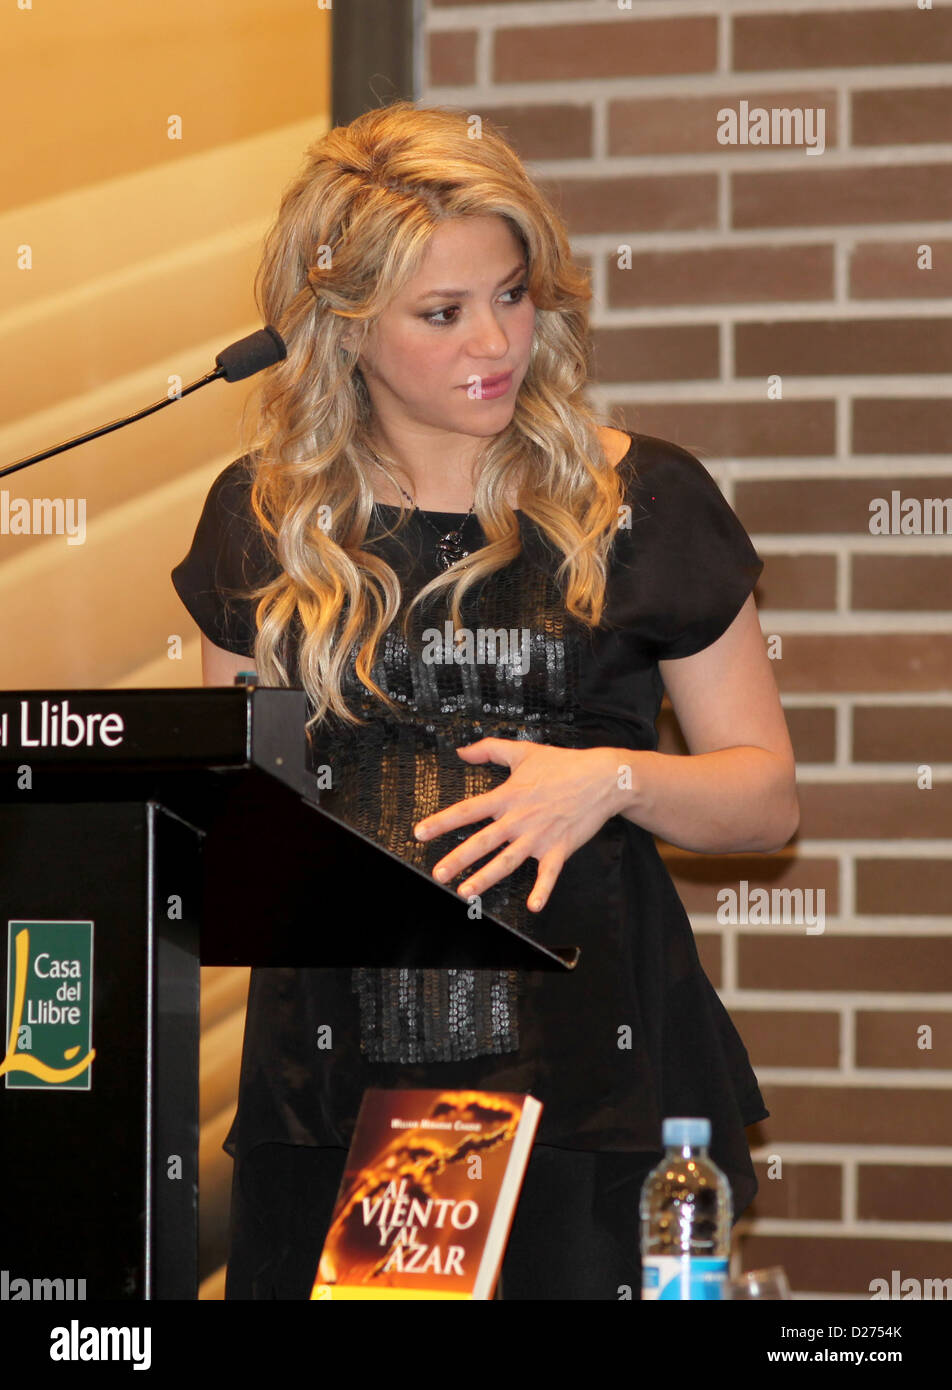 BARCELONA, Spanien - Januar 14: Kolumbianische Sängerin Shakira besucht eine Pressekonferenz für ihren Vater William Mebarak Chadid neueste Buchpräsentation "Al Viento y Al Azar" in der Casa del Llibre Buchhandlung am 14. Januar 2013 in Barcelona, Spanien. Foto von Elkin Cabarcas Stockfoto